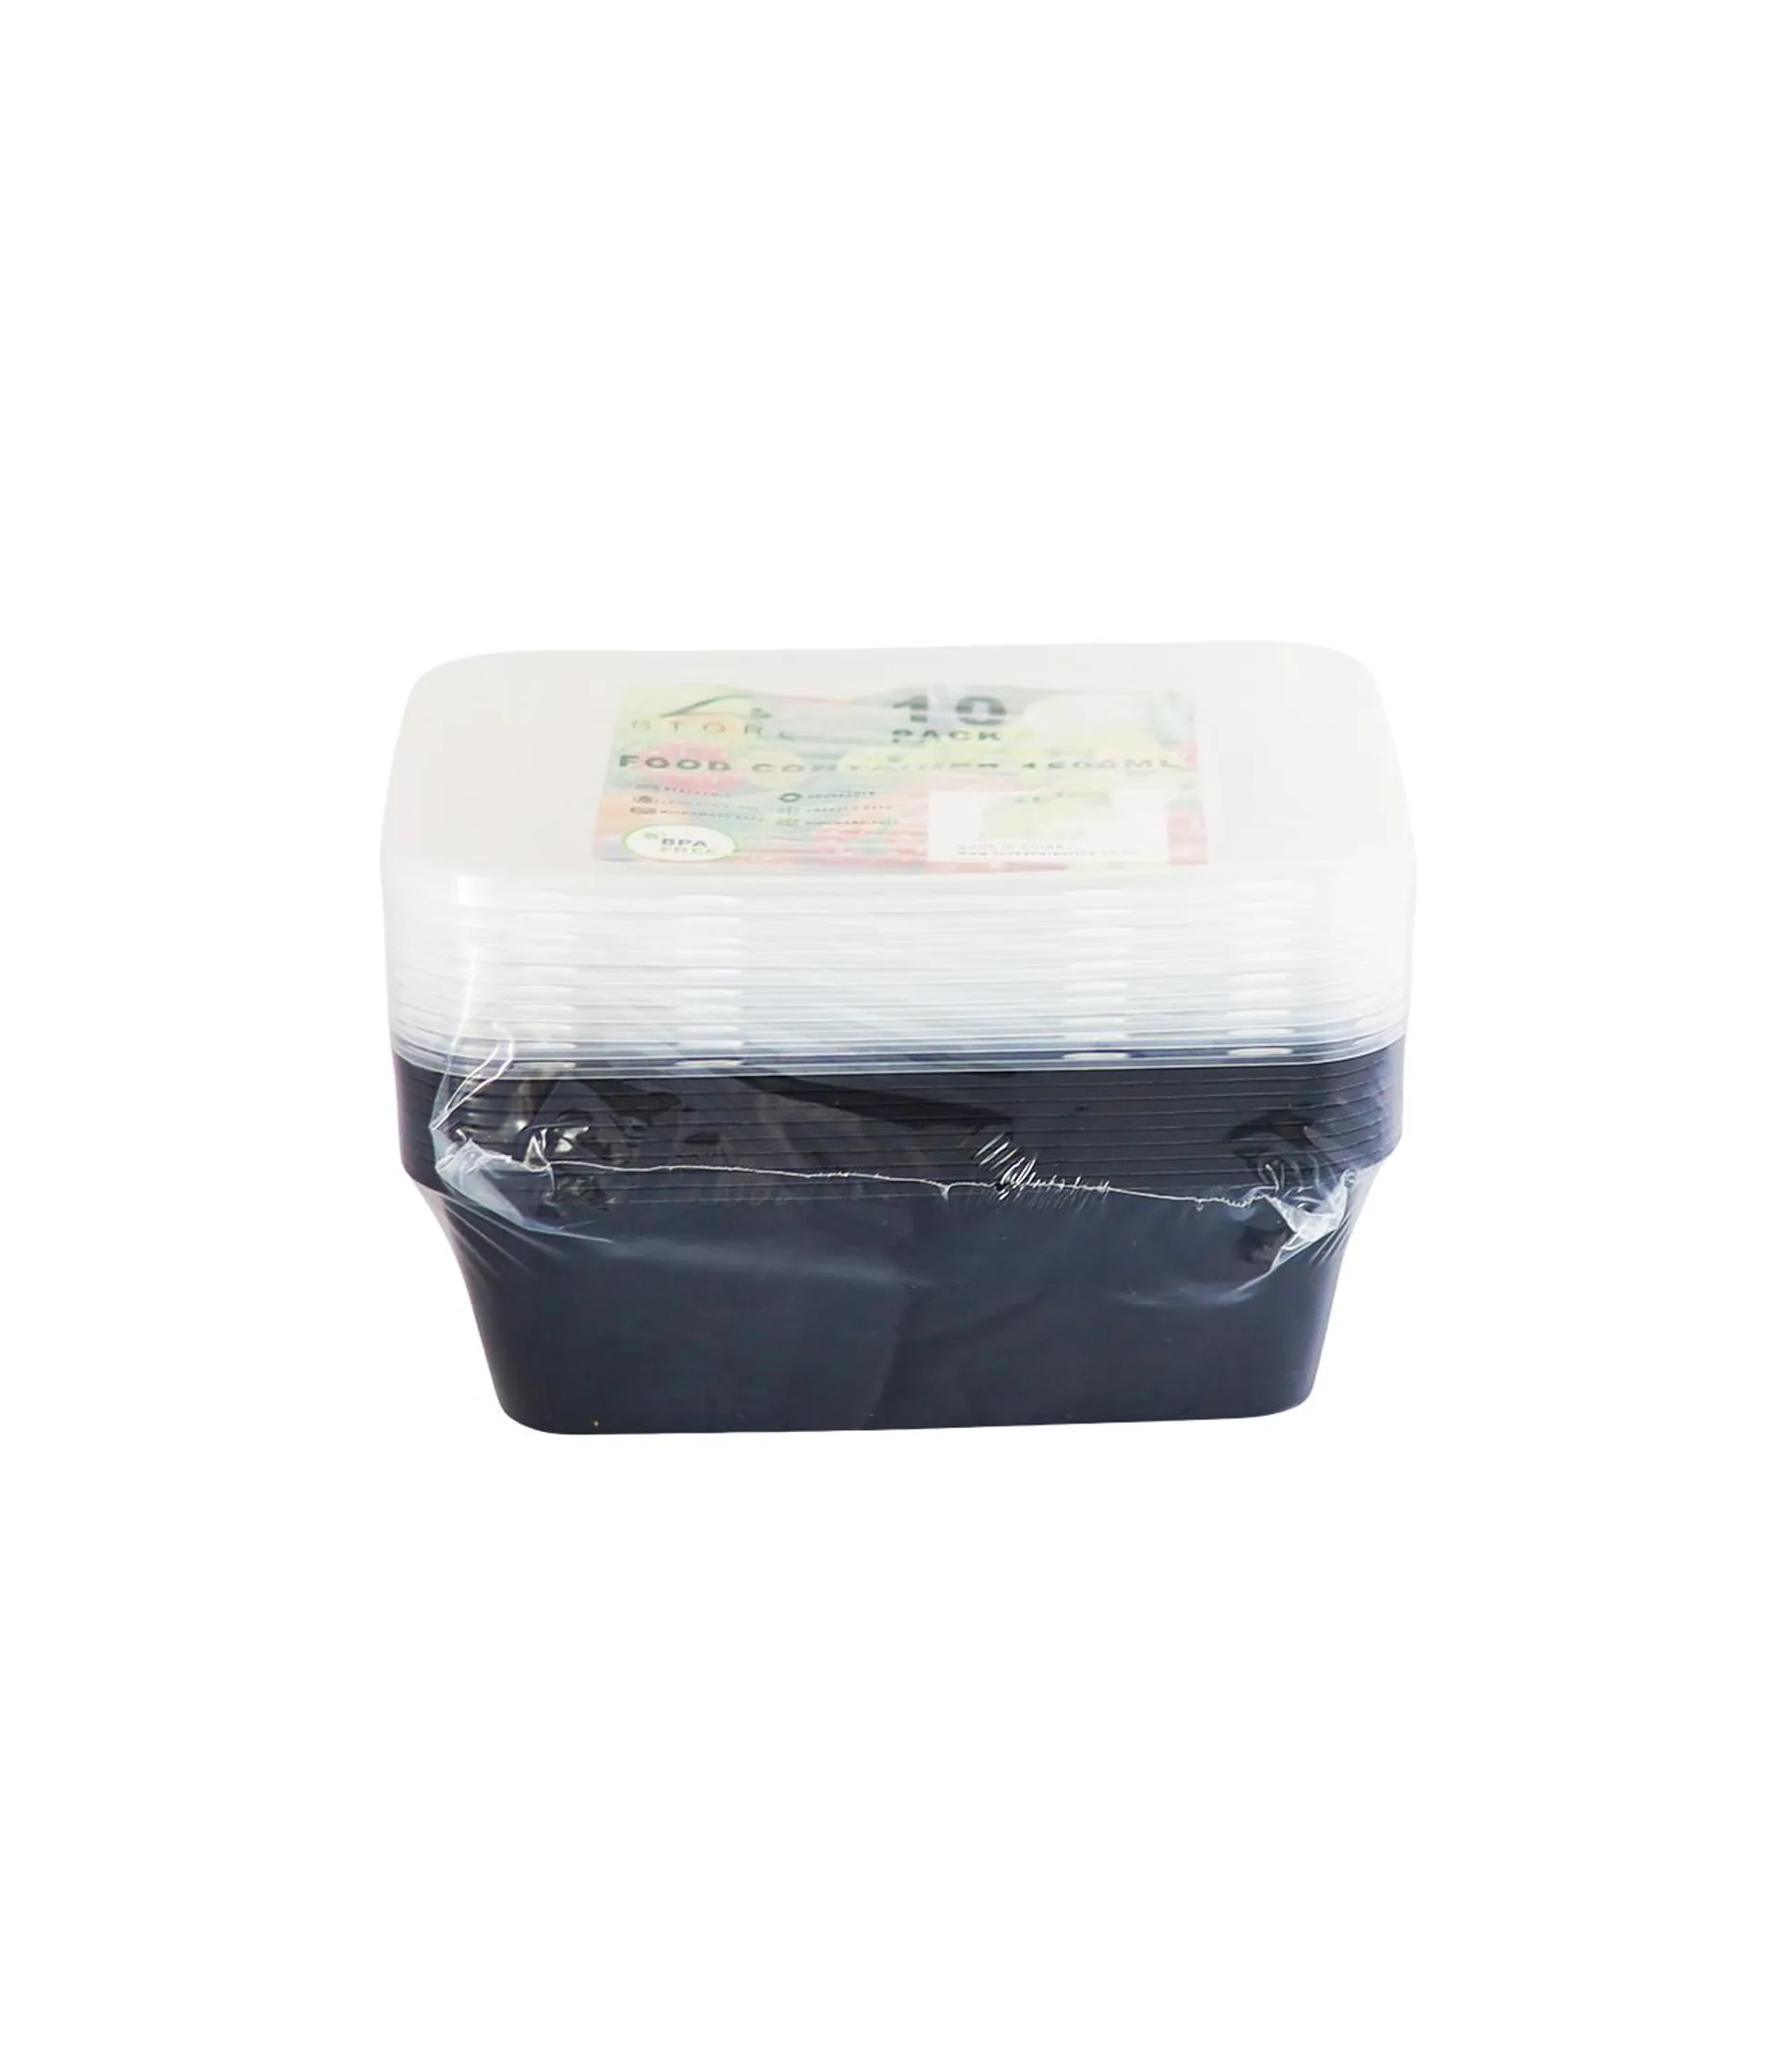 Black PP Plastic Rectangular Food Container 10pc 1500ml